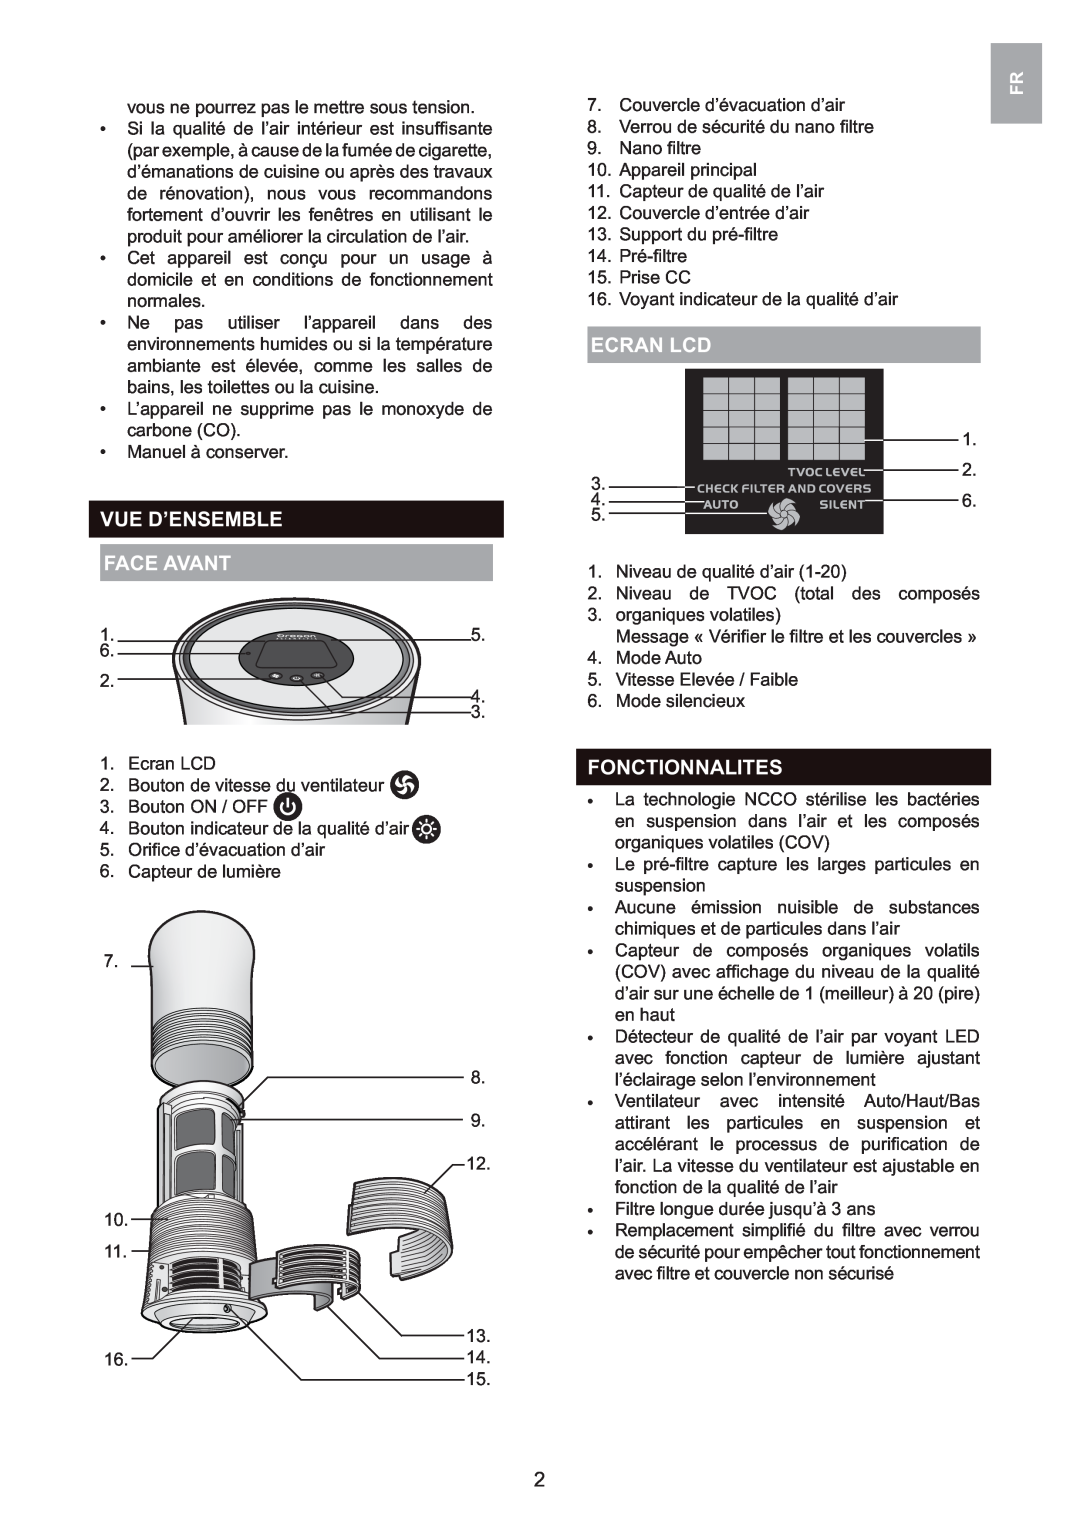 Oregon Scientific WS907 user manual Vue D’Ensemble Face Avant, Ecran Lcd, Fonctionnalites 